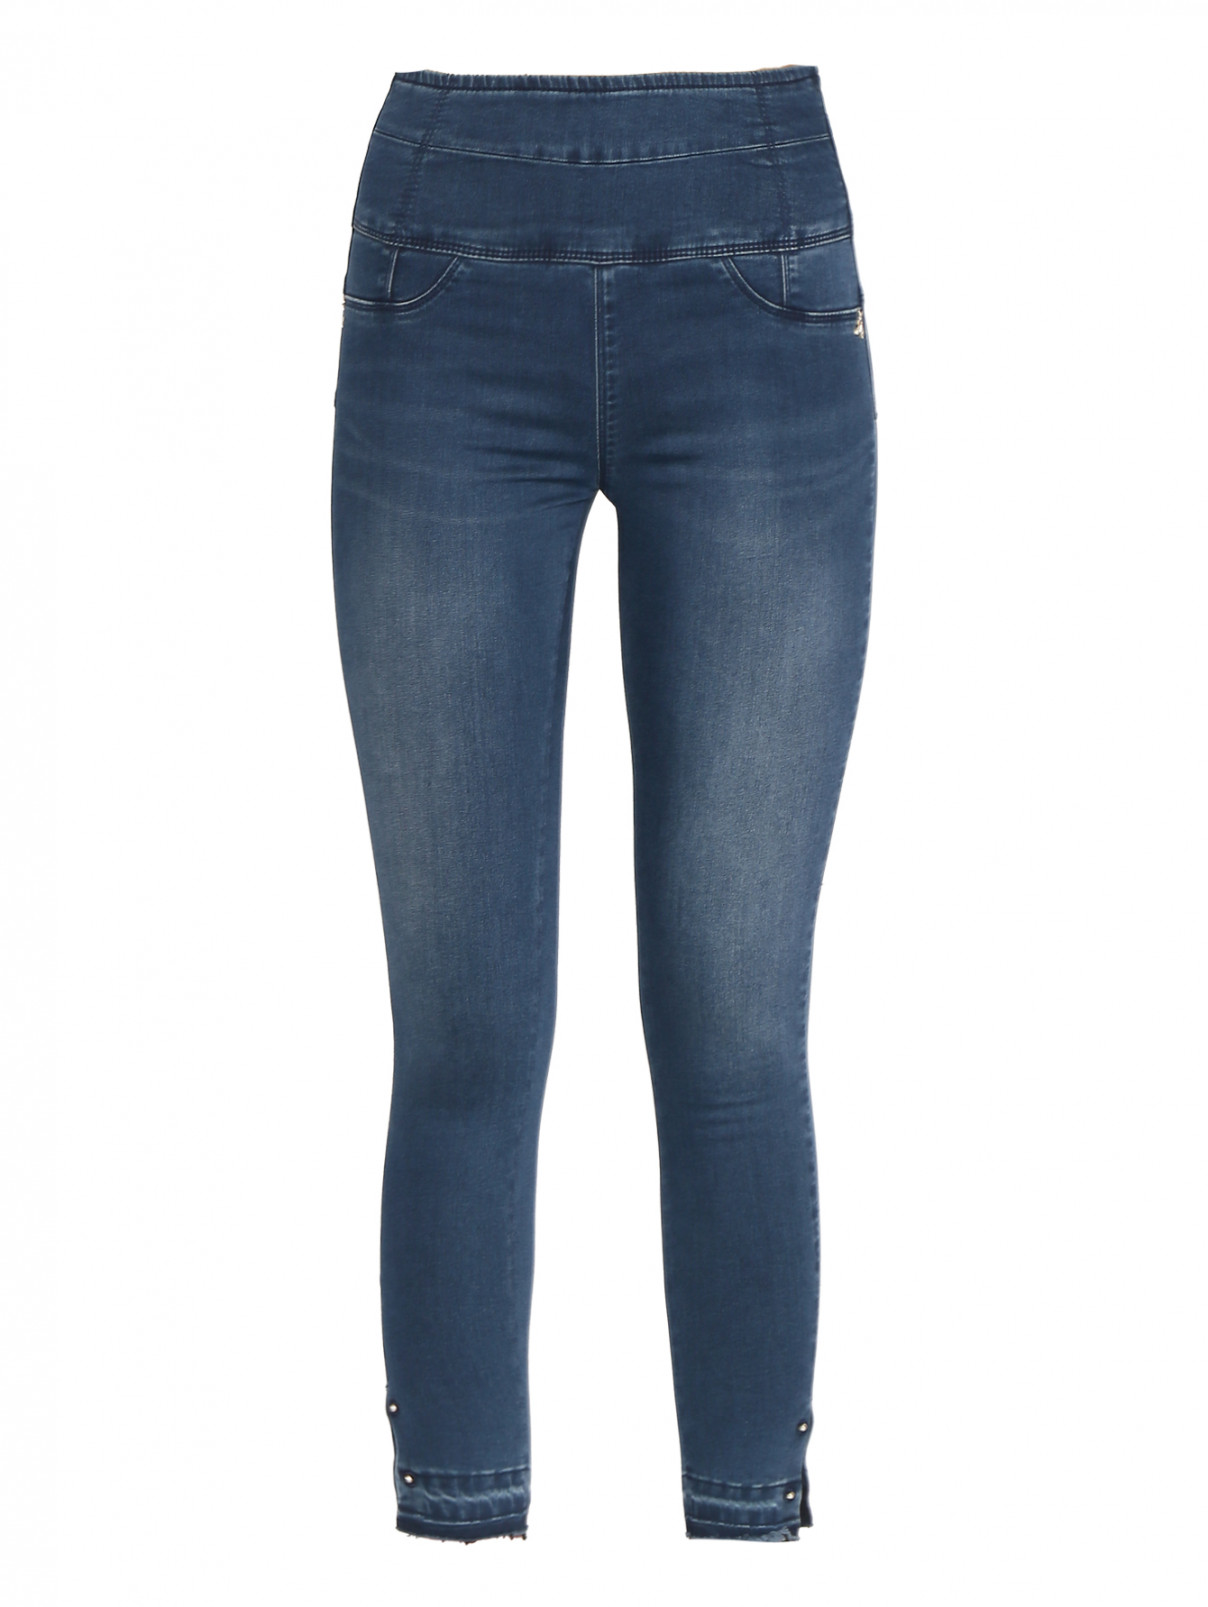 Узкие джинсы с молнией Patrizia Pepe  –  Общий вид  – Цвет:  Синий